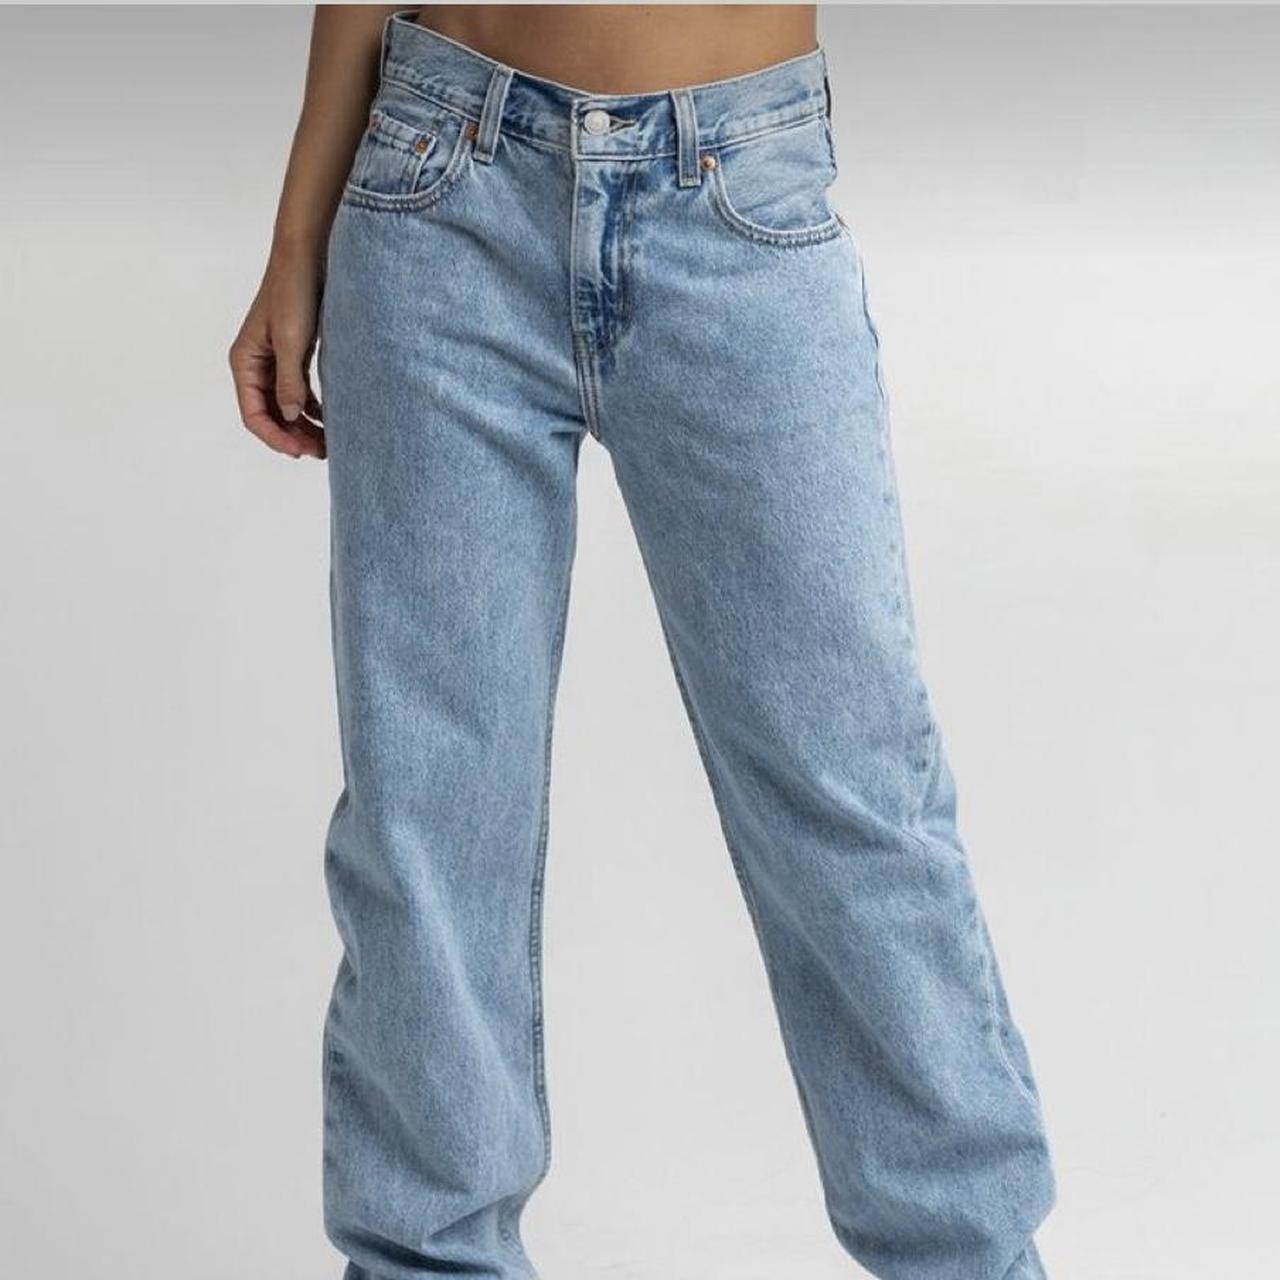 Levi’s Low Pro Jeans Size 31 - Depop